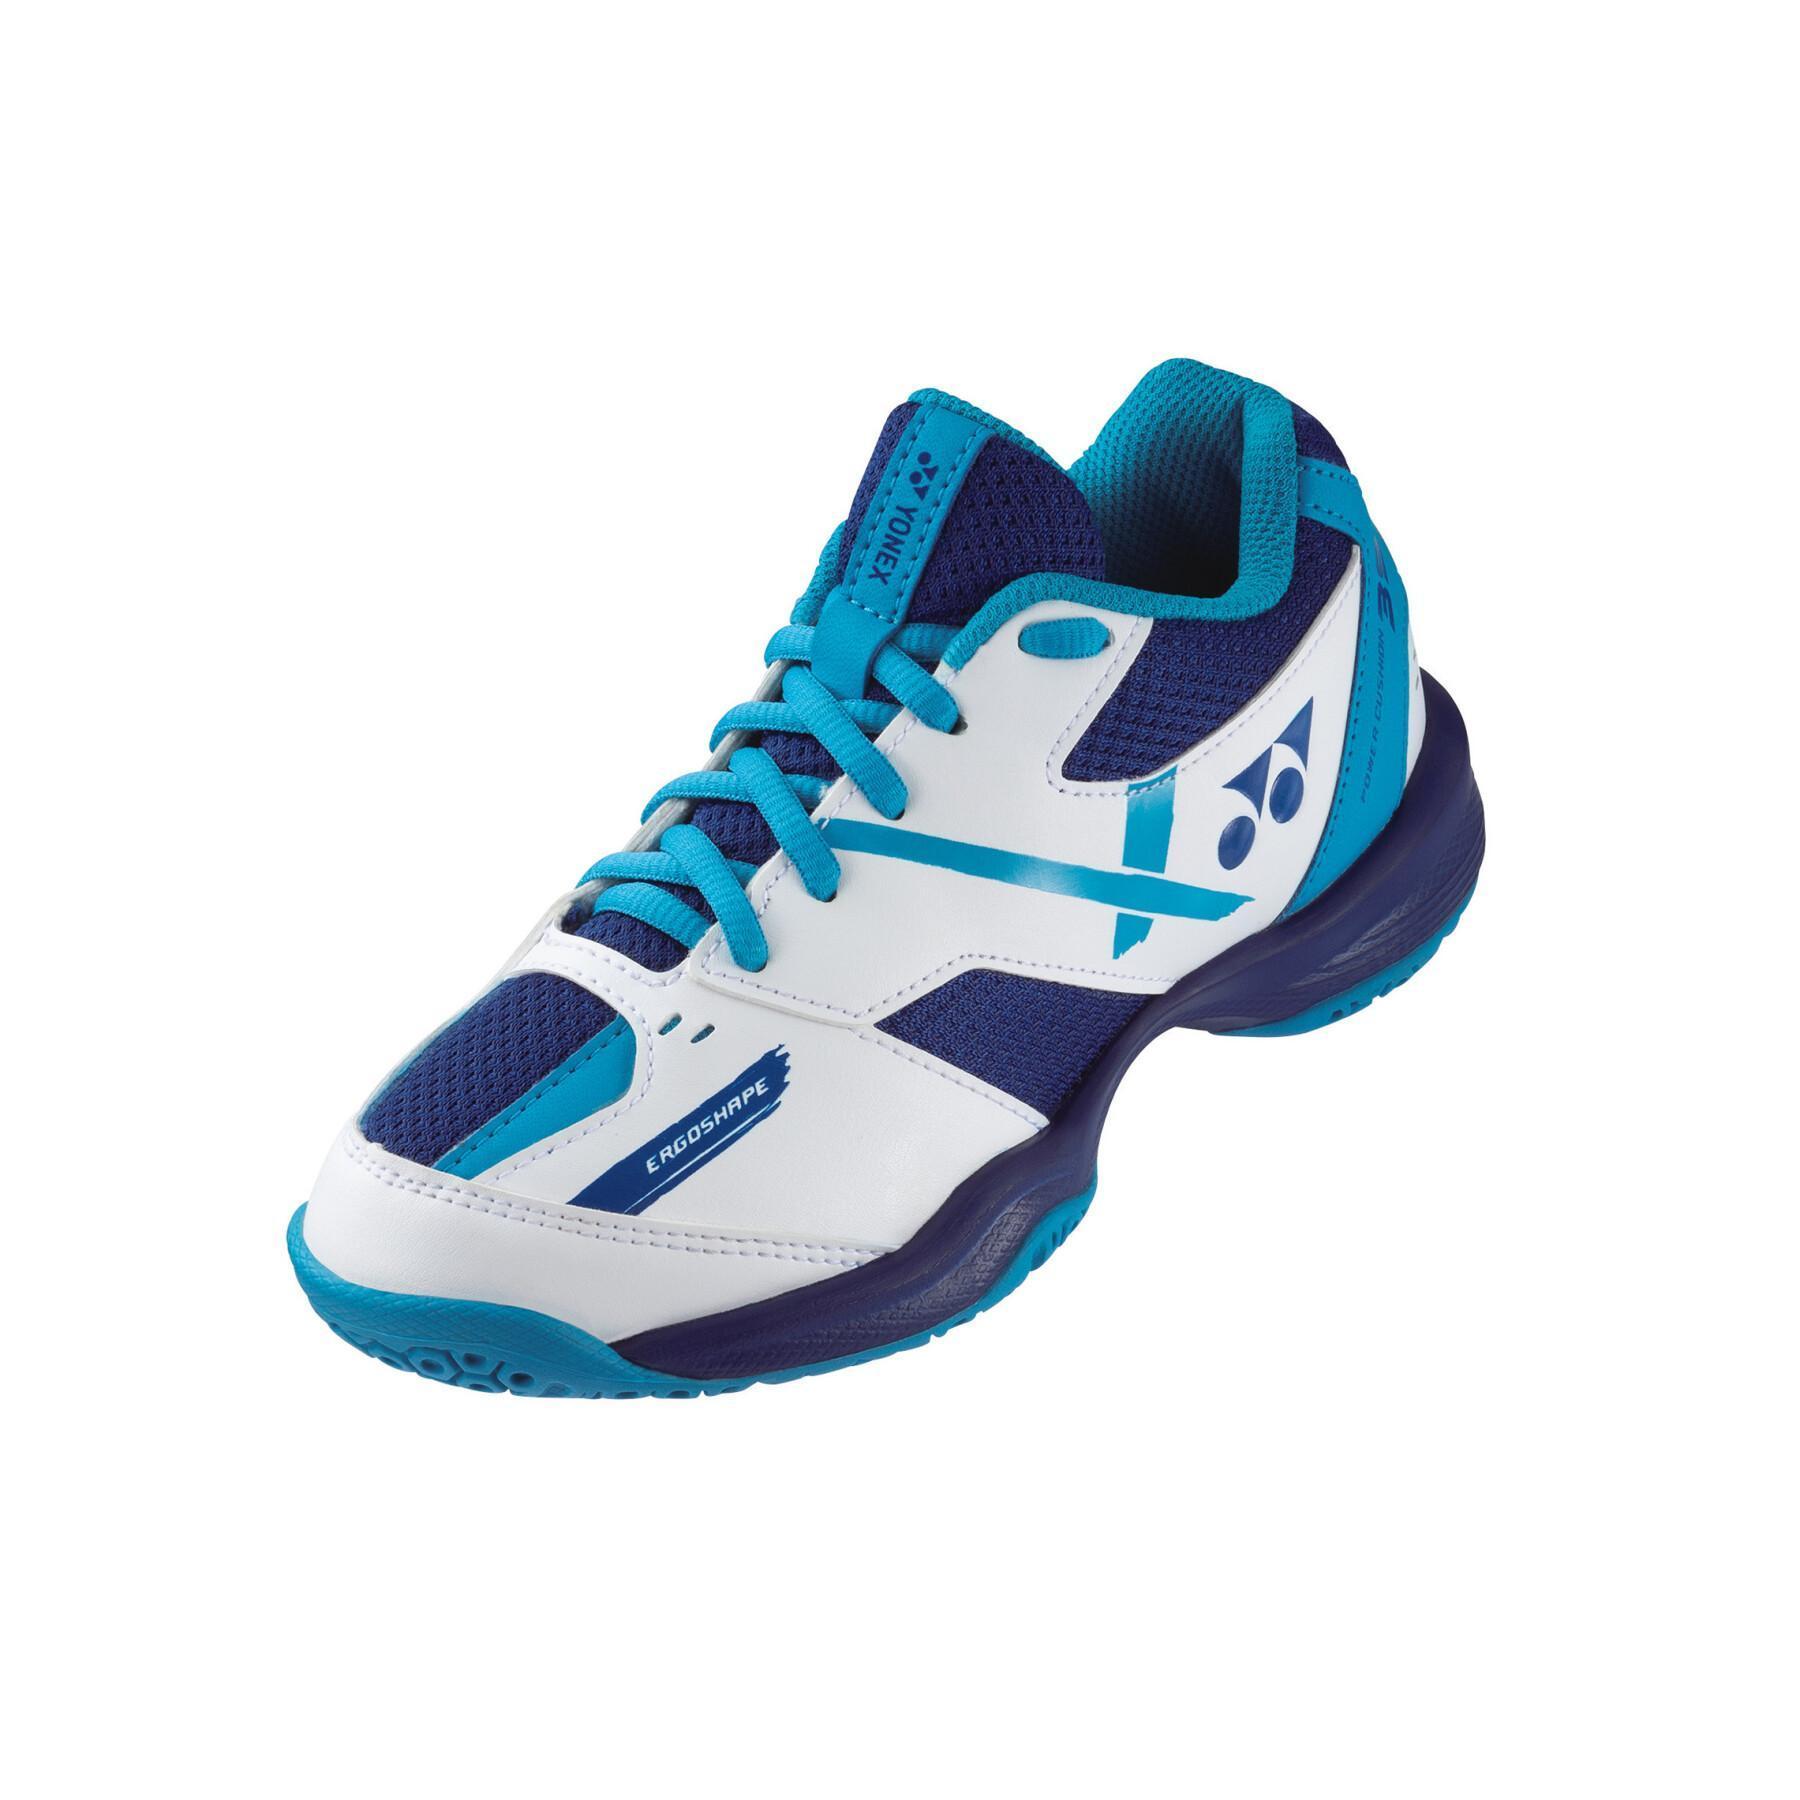 Badminton shoes for children Yonex PC 39